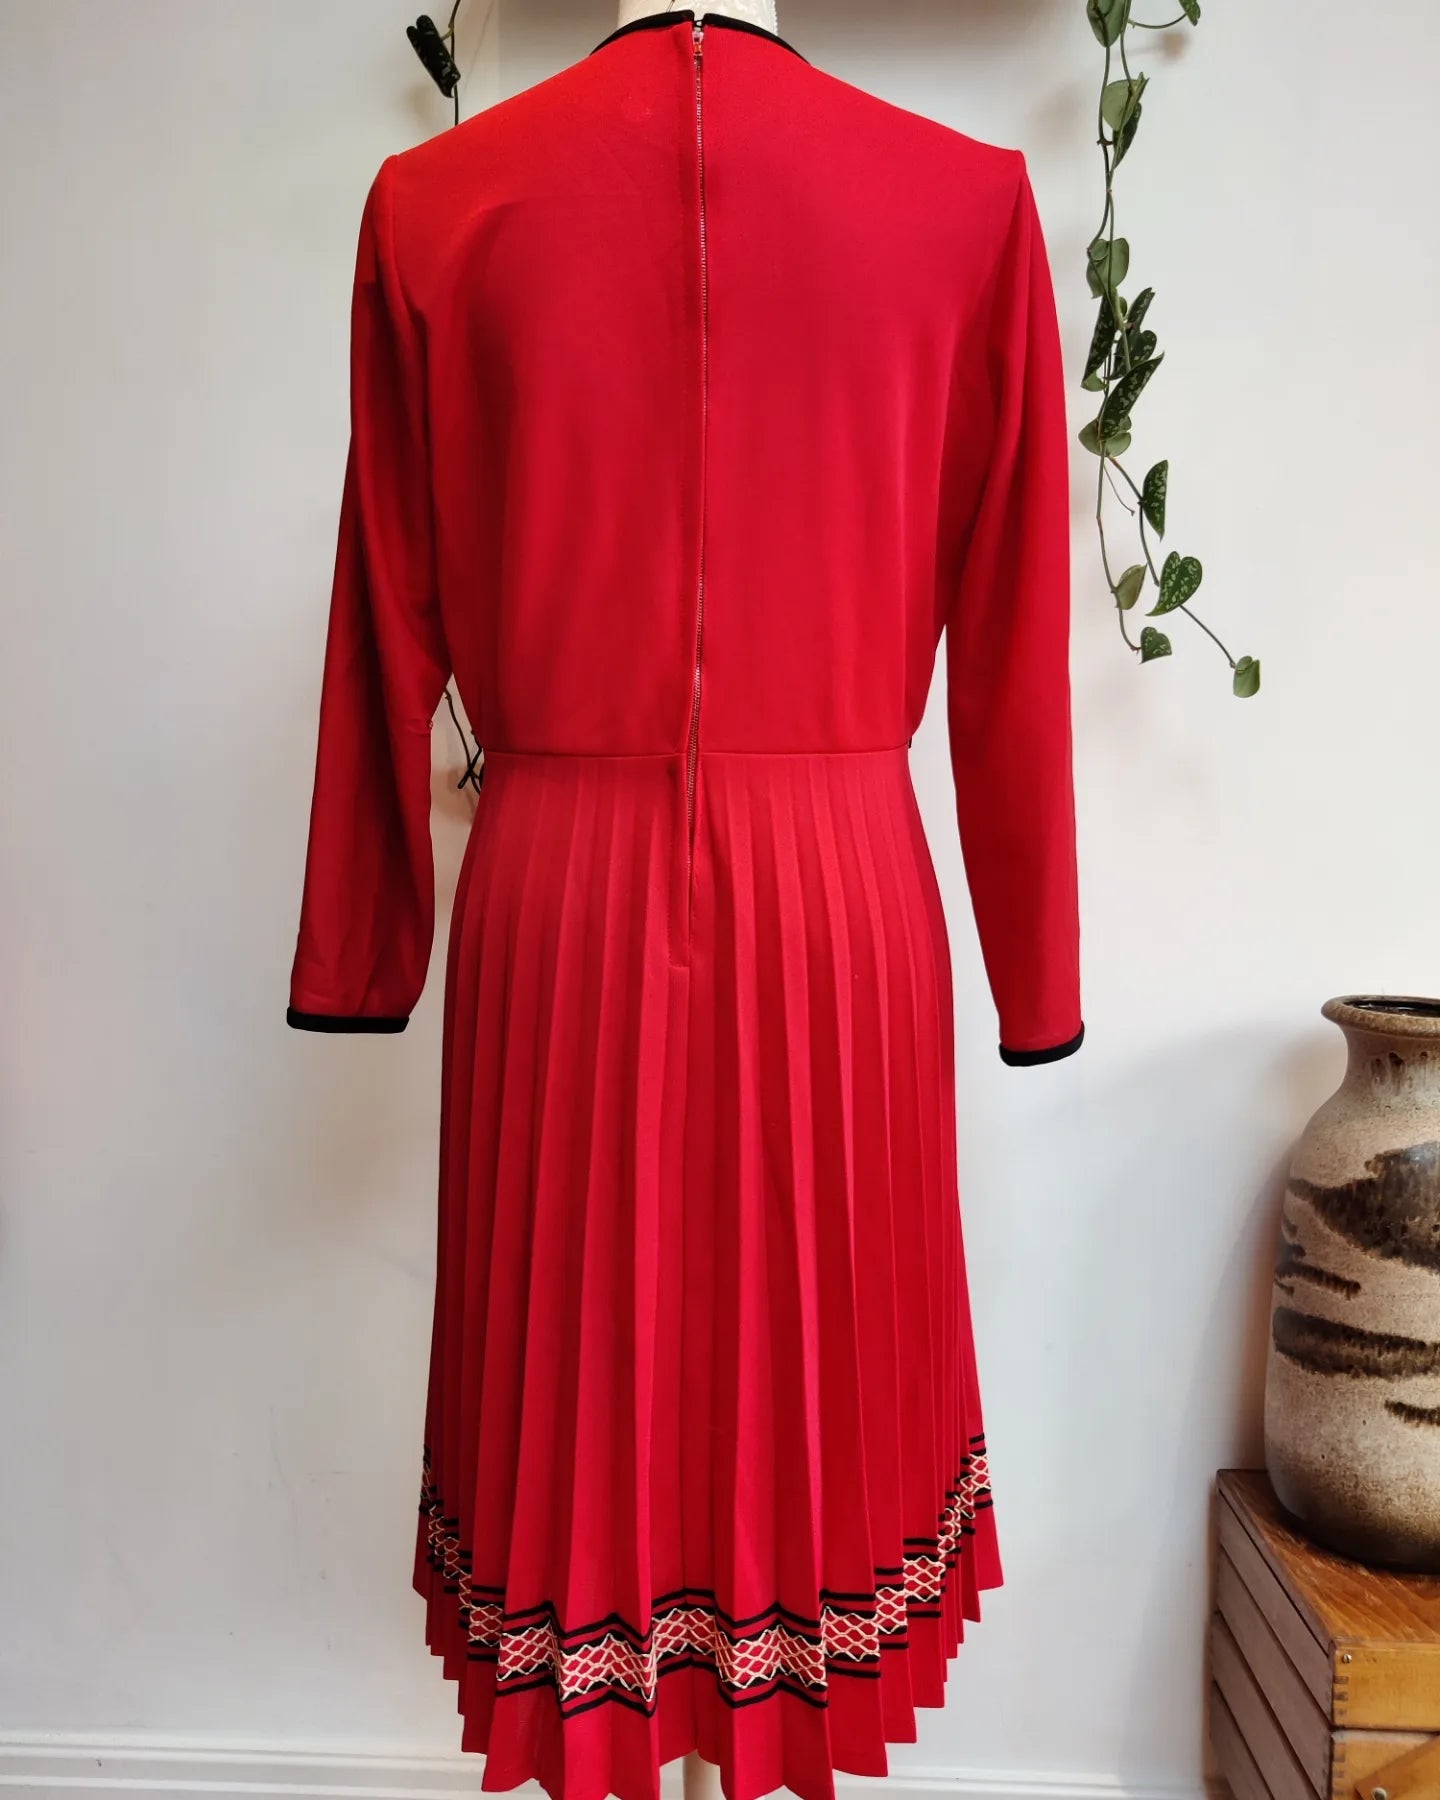 Red and black vintage pleated midi dress